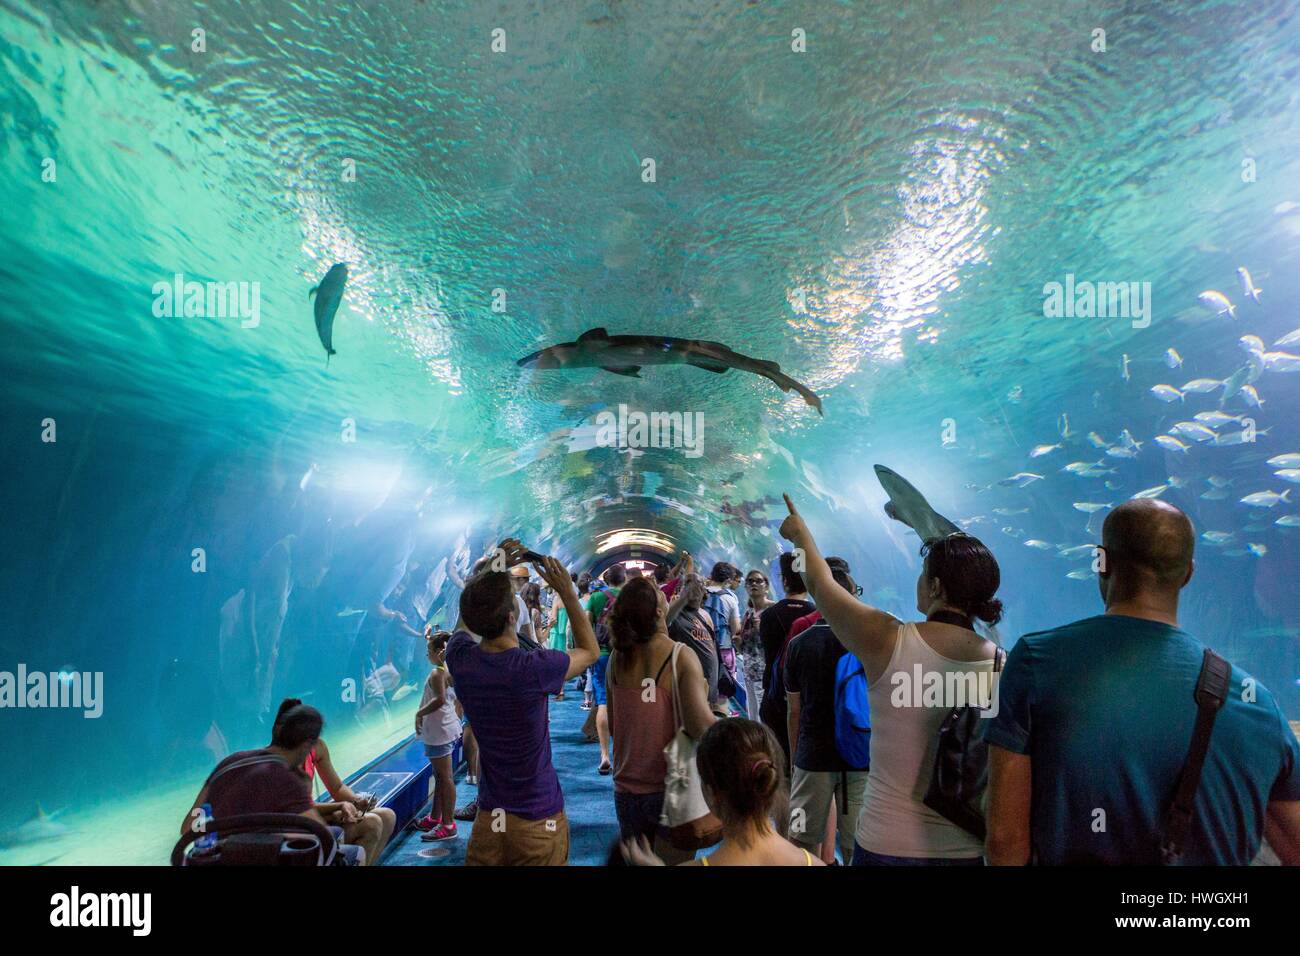 Spain, Valencia, City of Sciences and Arts, Oceanografic, shark tunnel Stock Photo